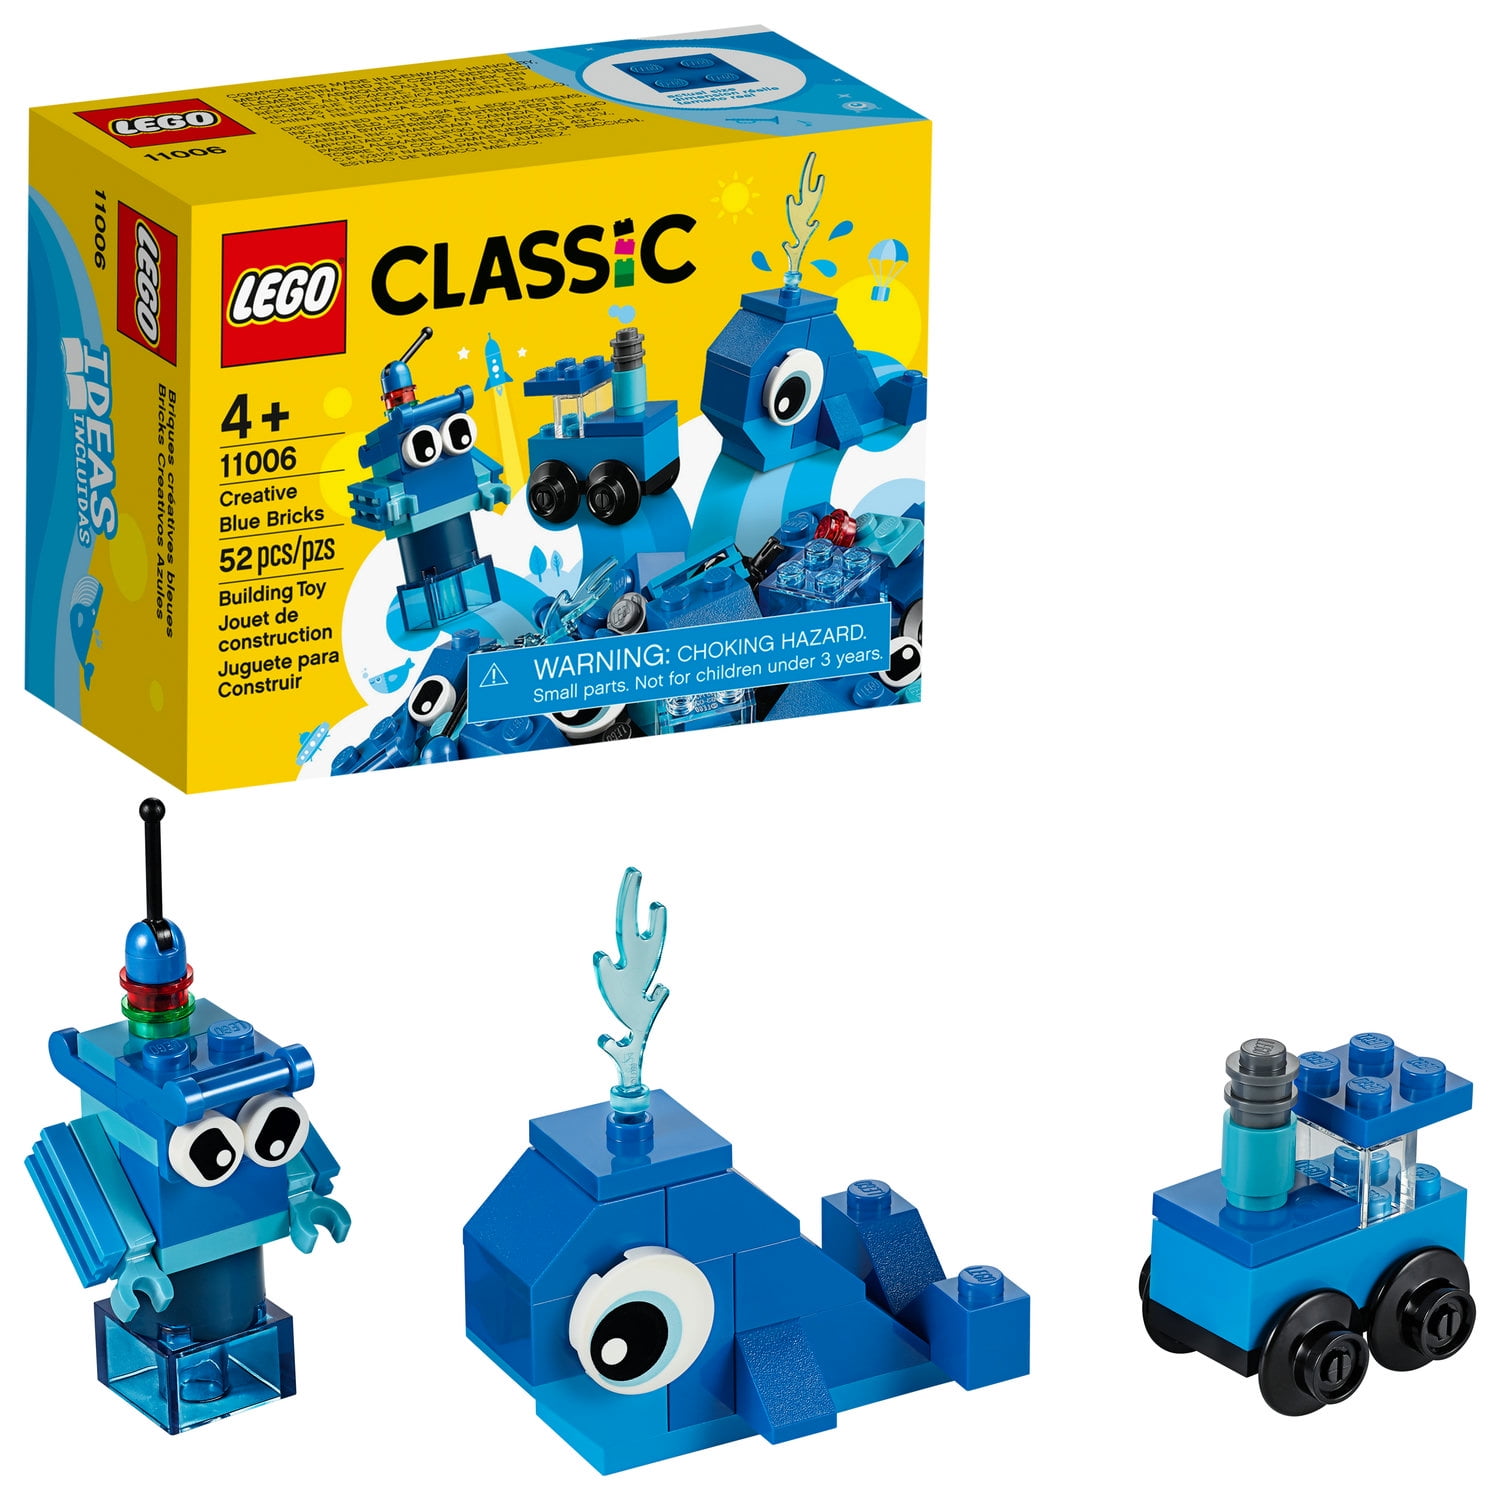 LEGO Classic Blue Bricks 11006 Building Set for Imaginative Play (52 Pieces) - Walmart.com